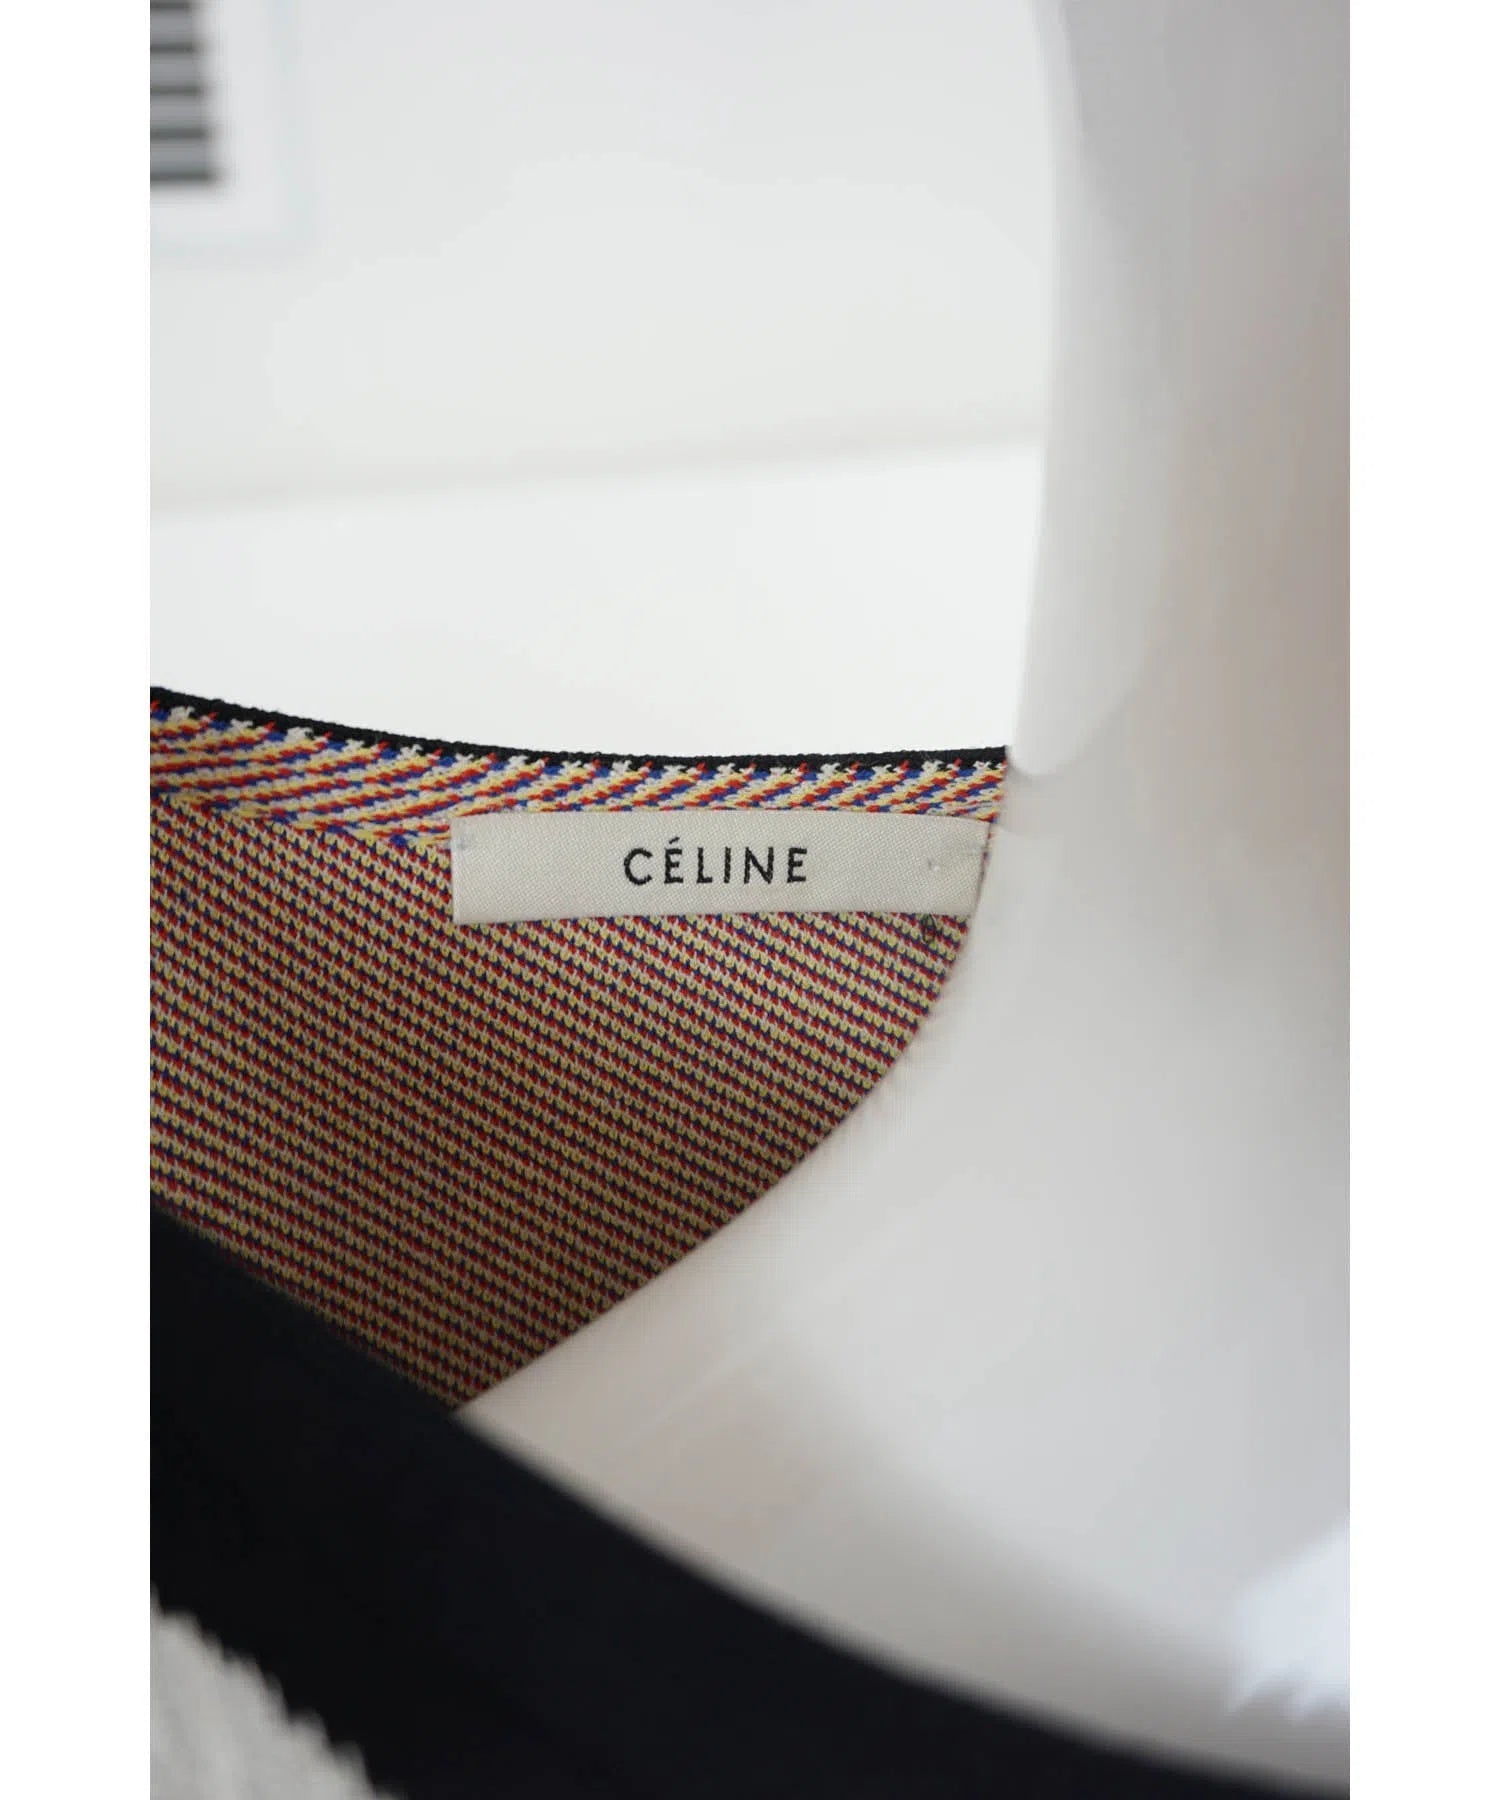 Celine by Phoebe Philo Primary Brushstroke Dress 2014 Spring